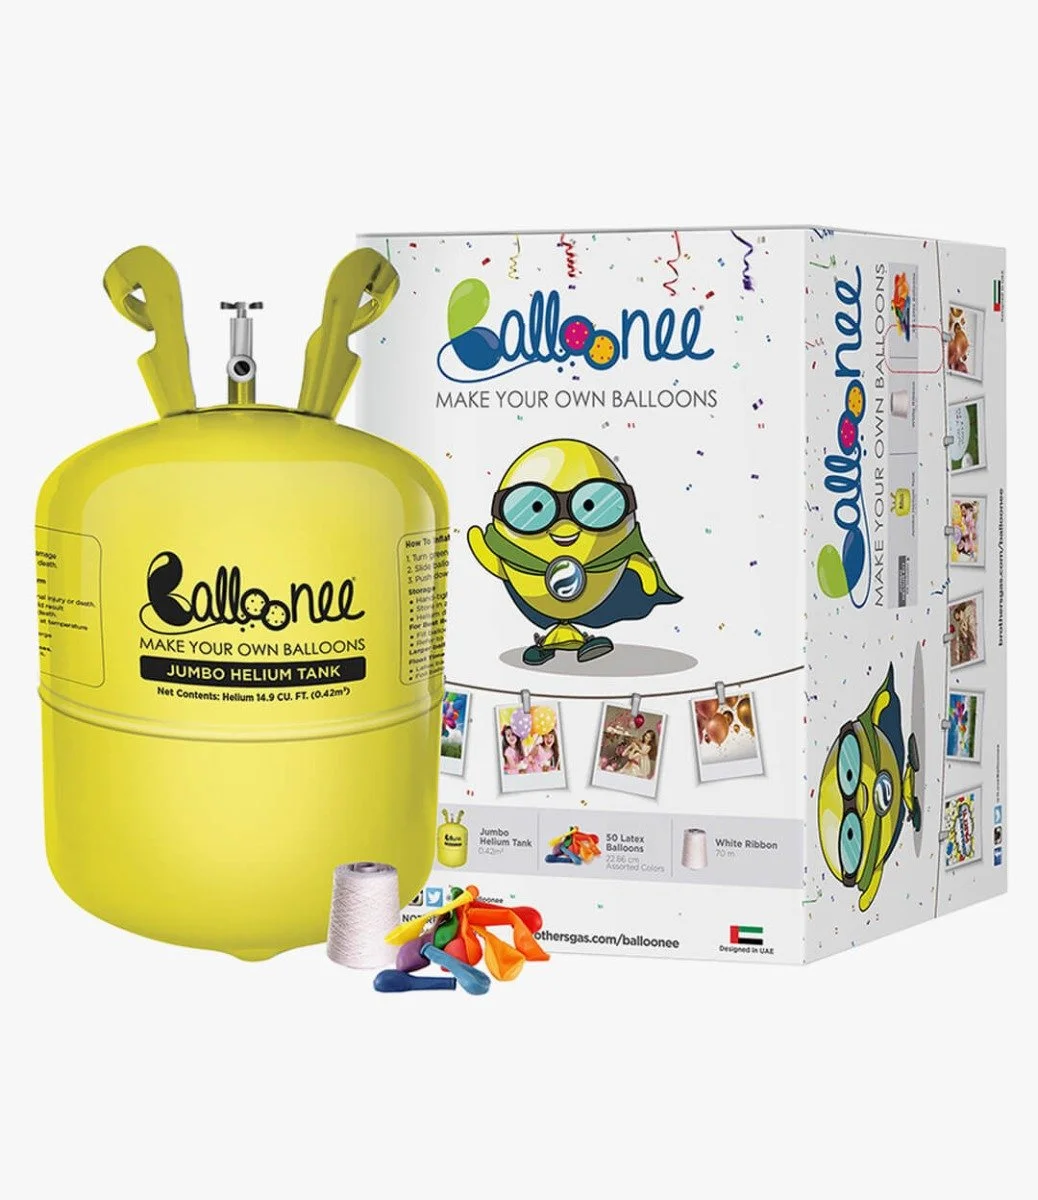 Balloonee Jumbo Disposable Helium Party Kit - Large